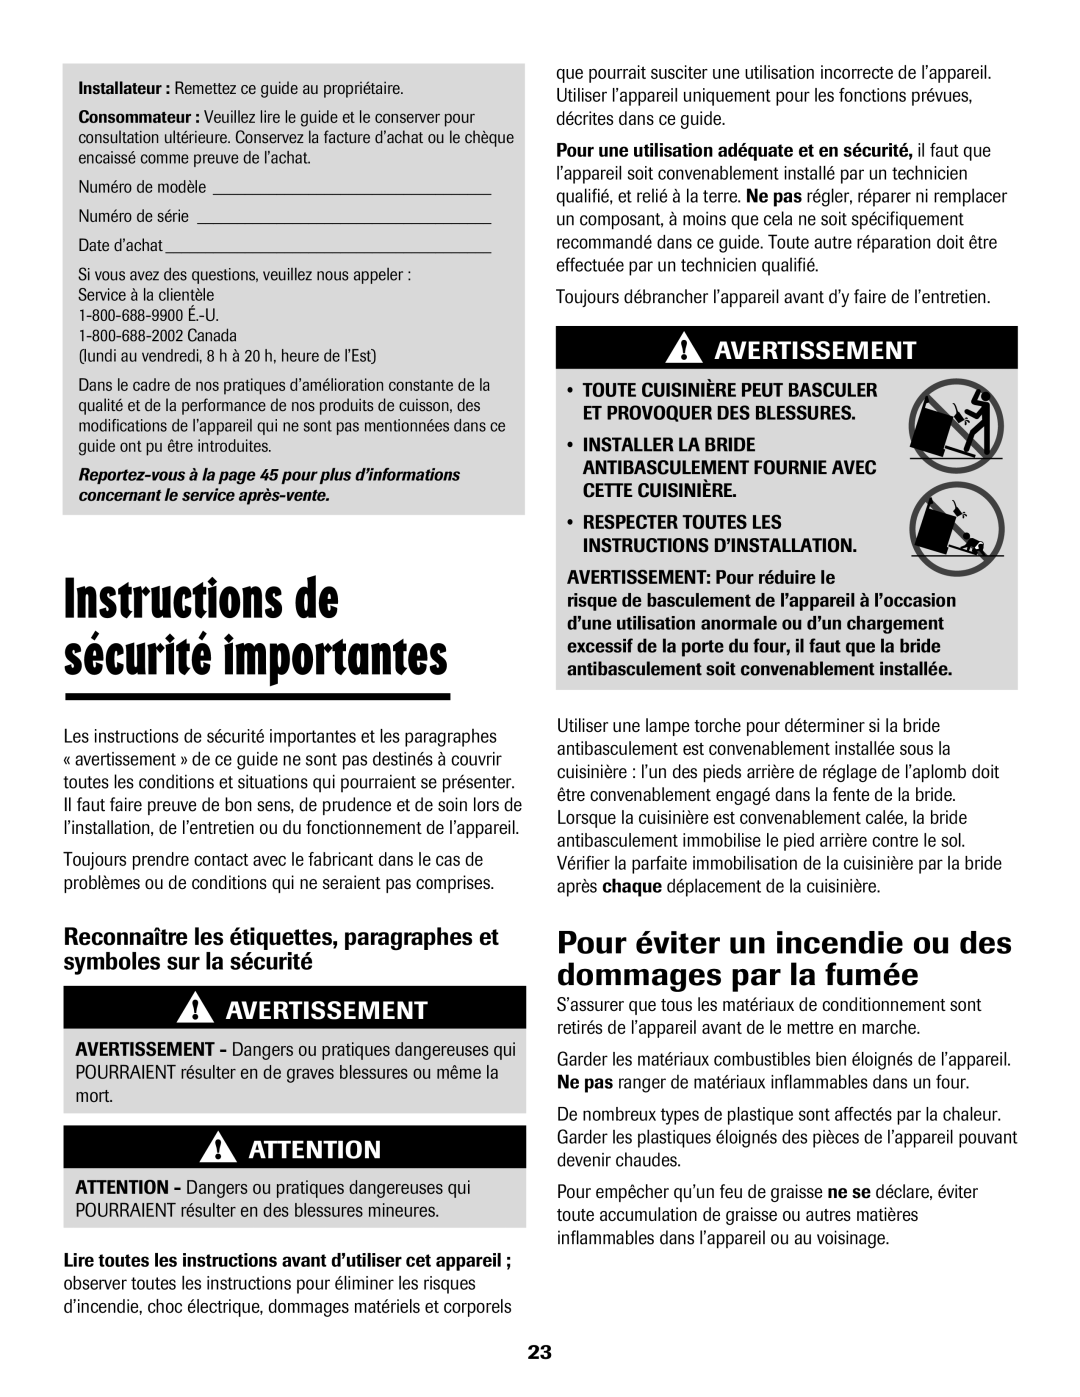 Maytag 500 important safety instructions Avertissement, Instructions de sécurité importantes 